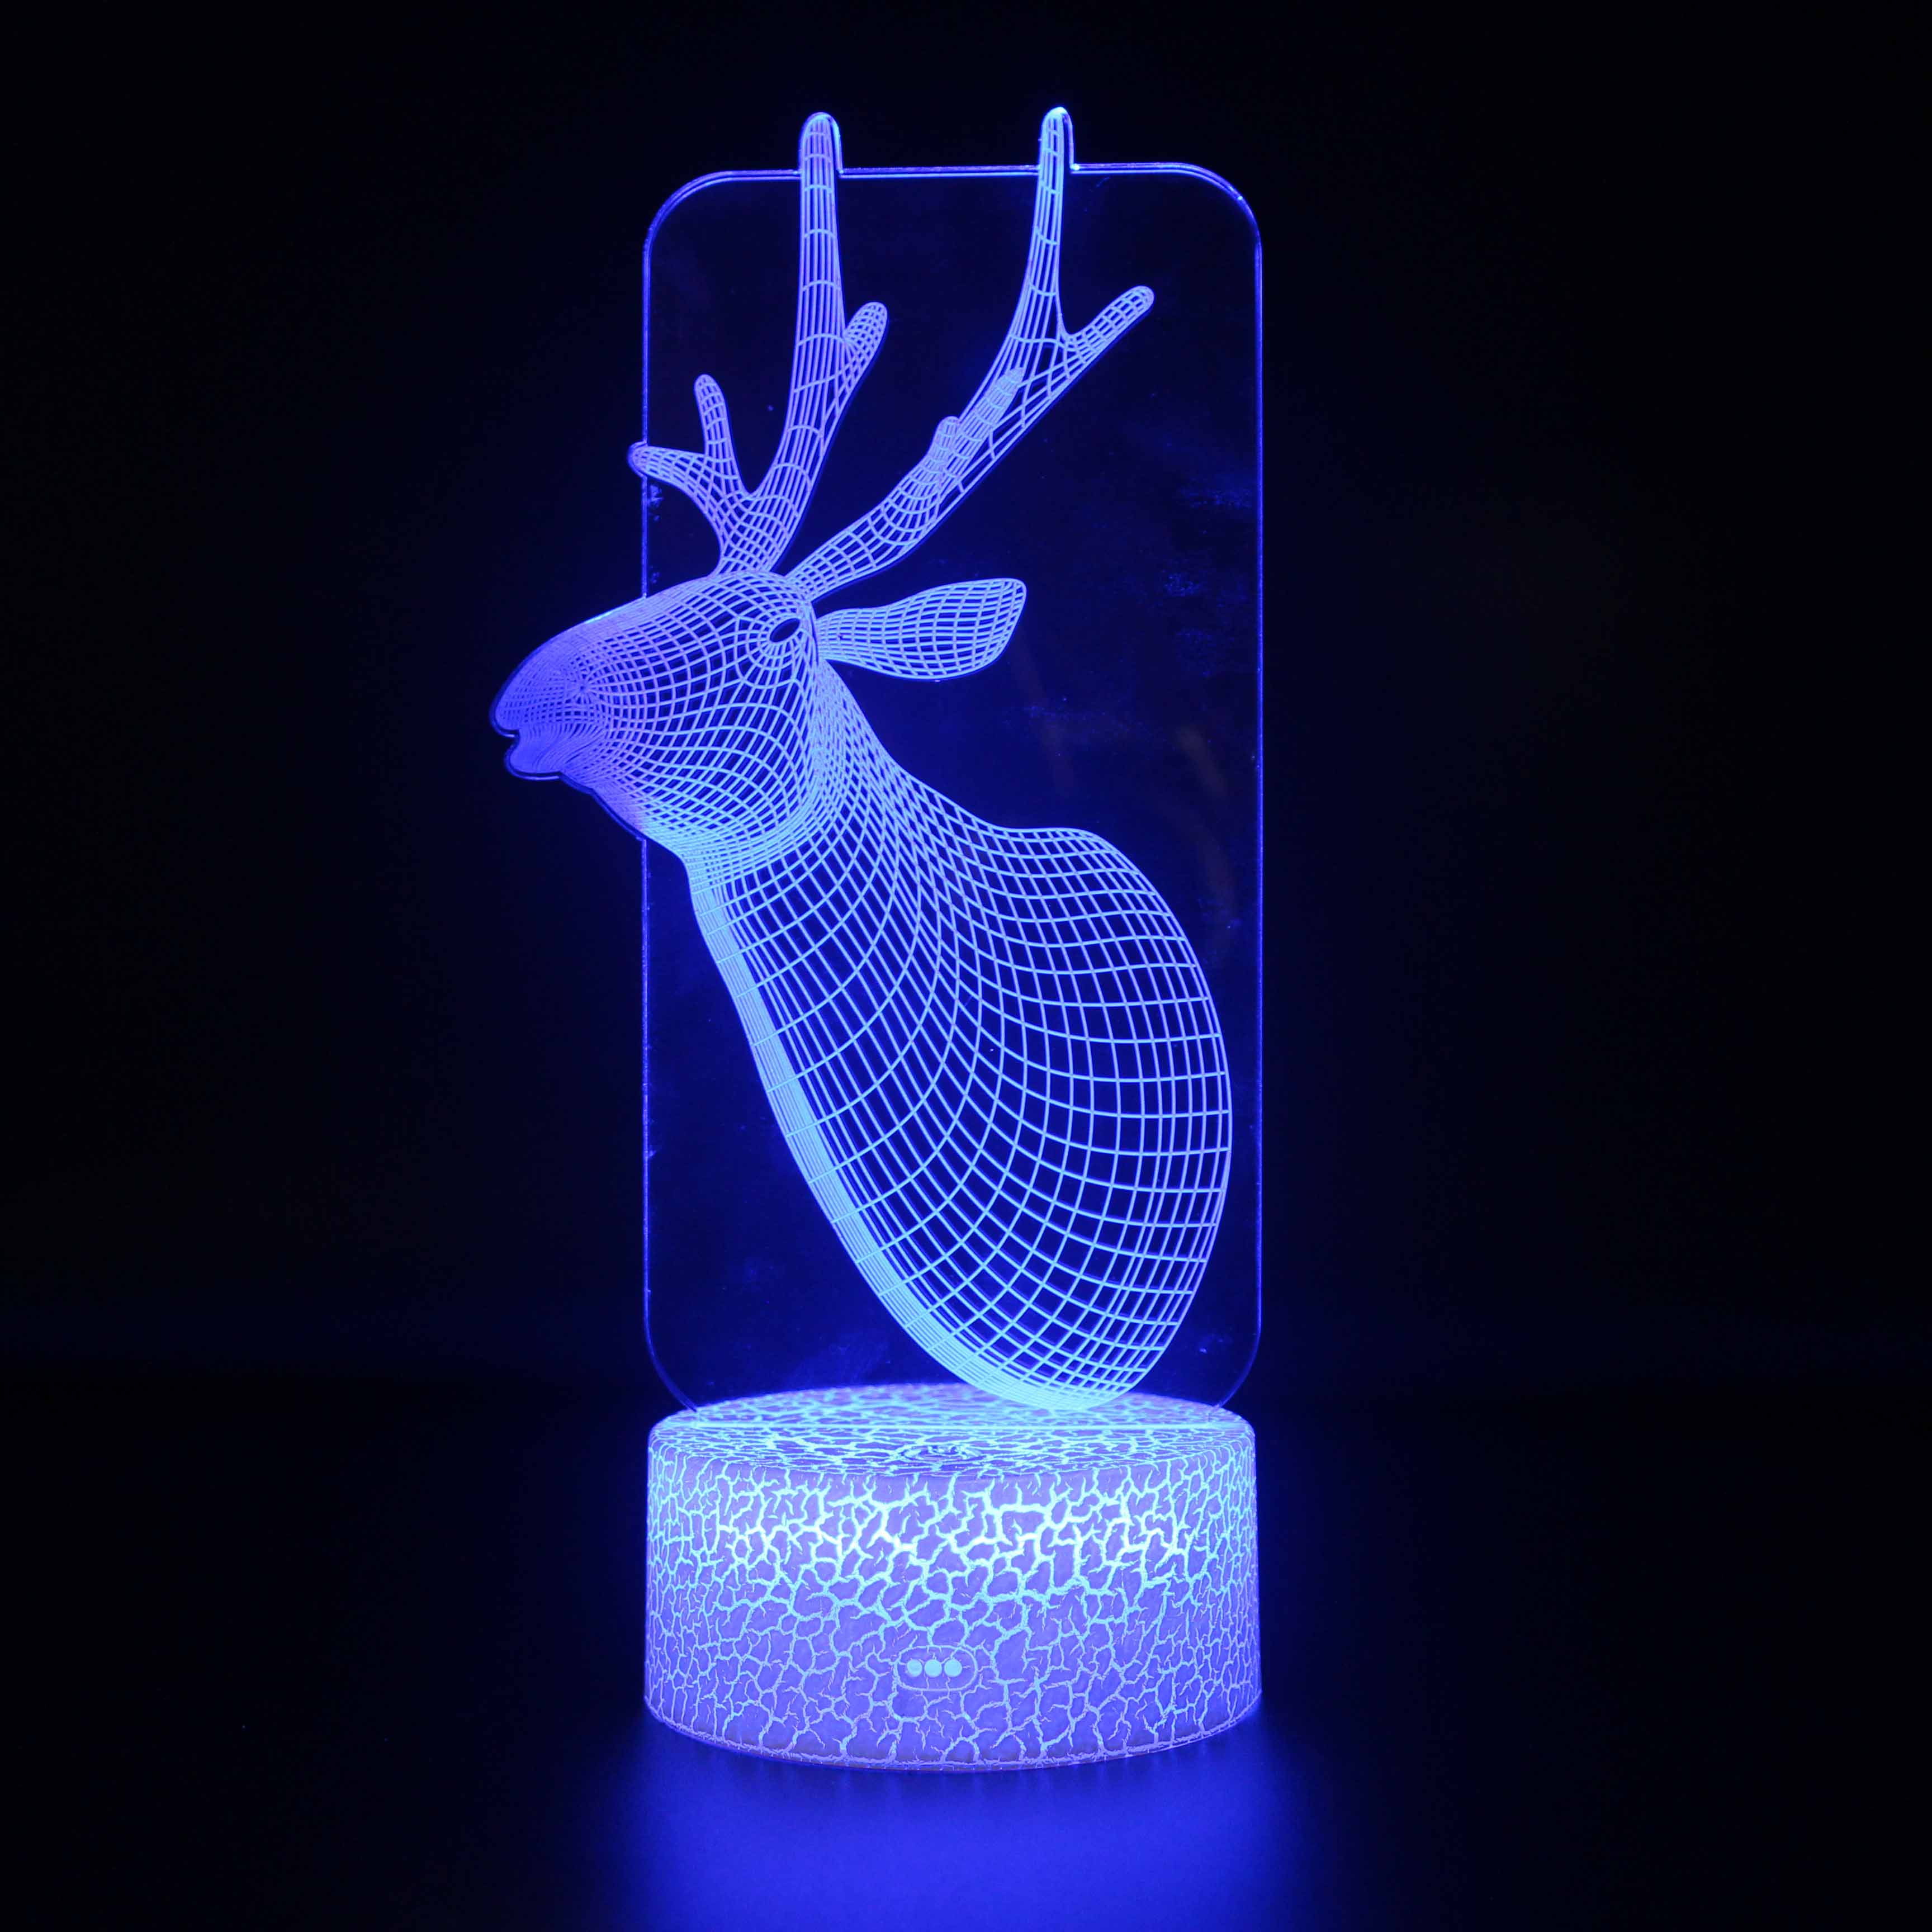 Luz de soporte de noche 3D, control táctil Visualización de ilusión óptica Pájaros Animales, lámpara de luz nocturna LED 7 colores cambiantes Control táctil Soporte de lámpara de luz nocturna